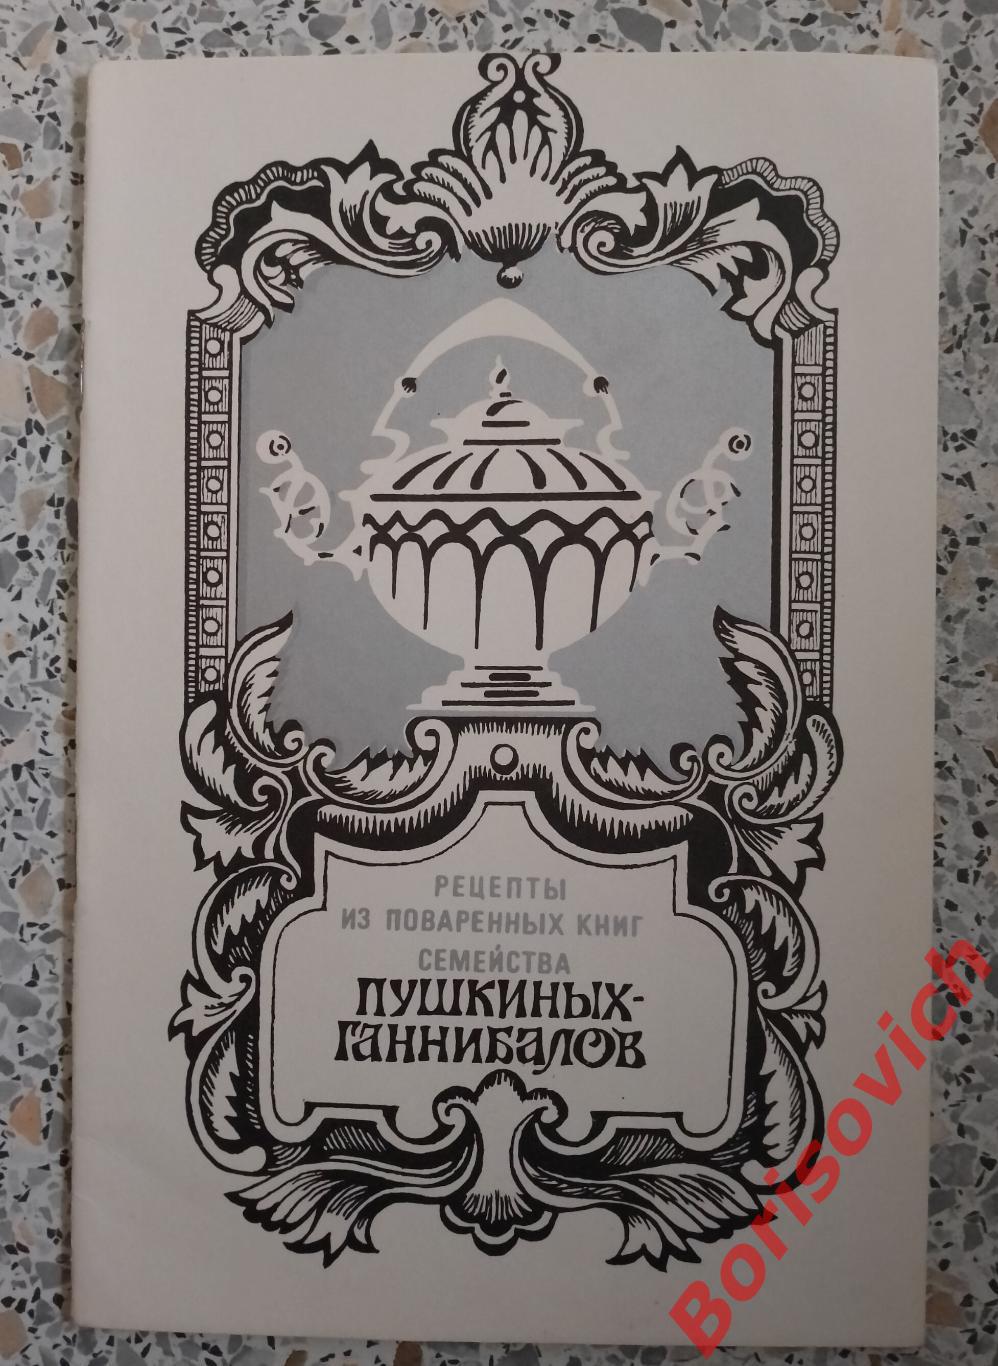 Рецепты из поваренных книг семейства ПУШКИНЫХ - ГАННИБАЛОВ 1989